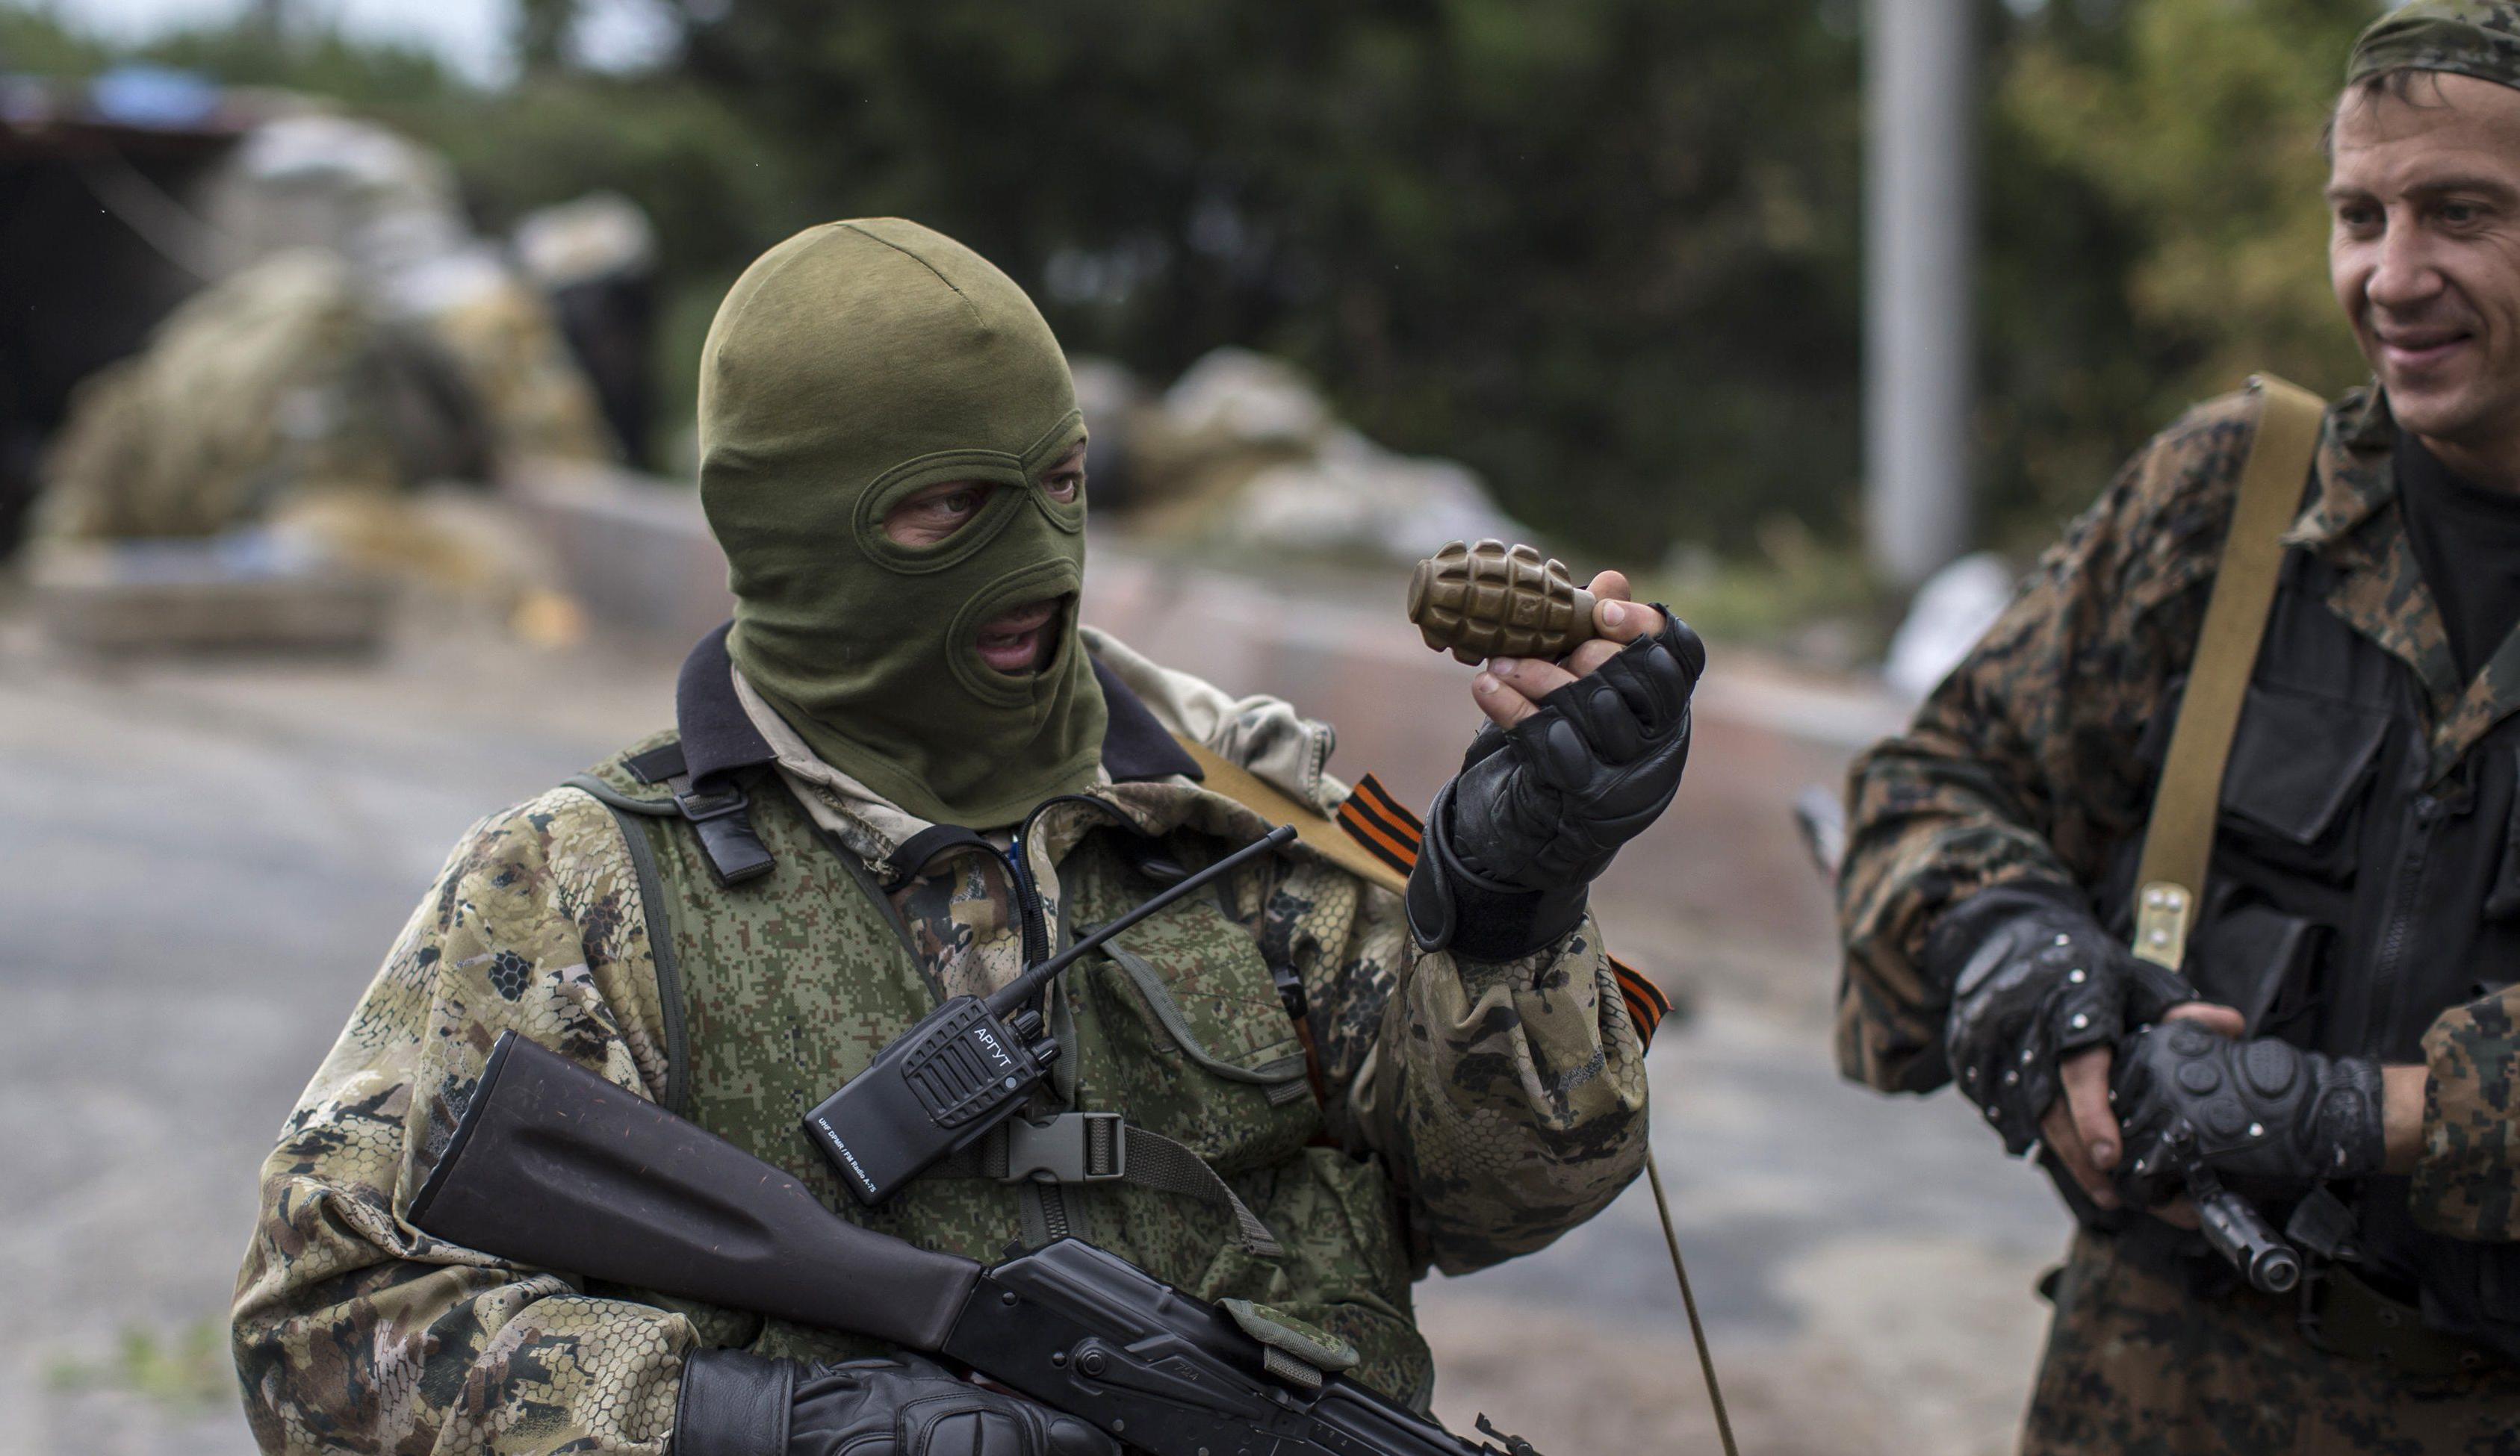 Провокации в АТО: оккупанты РФ дали приказ обстрелять мирное население Донбасса ради лживого репортажа пропагандистов "Россия 24"